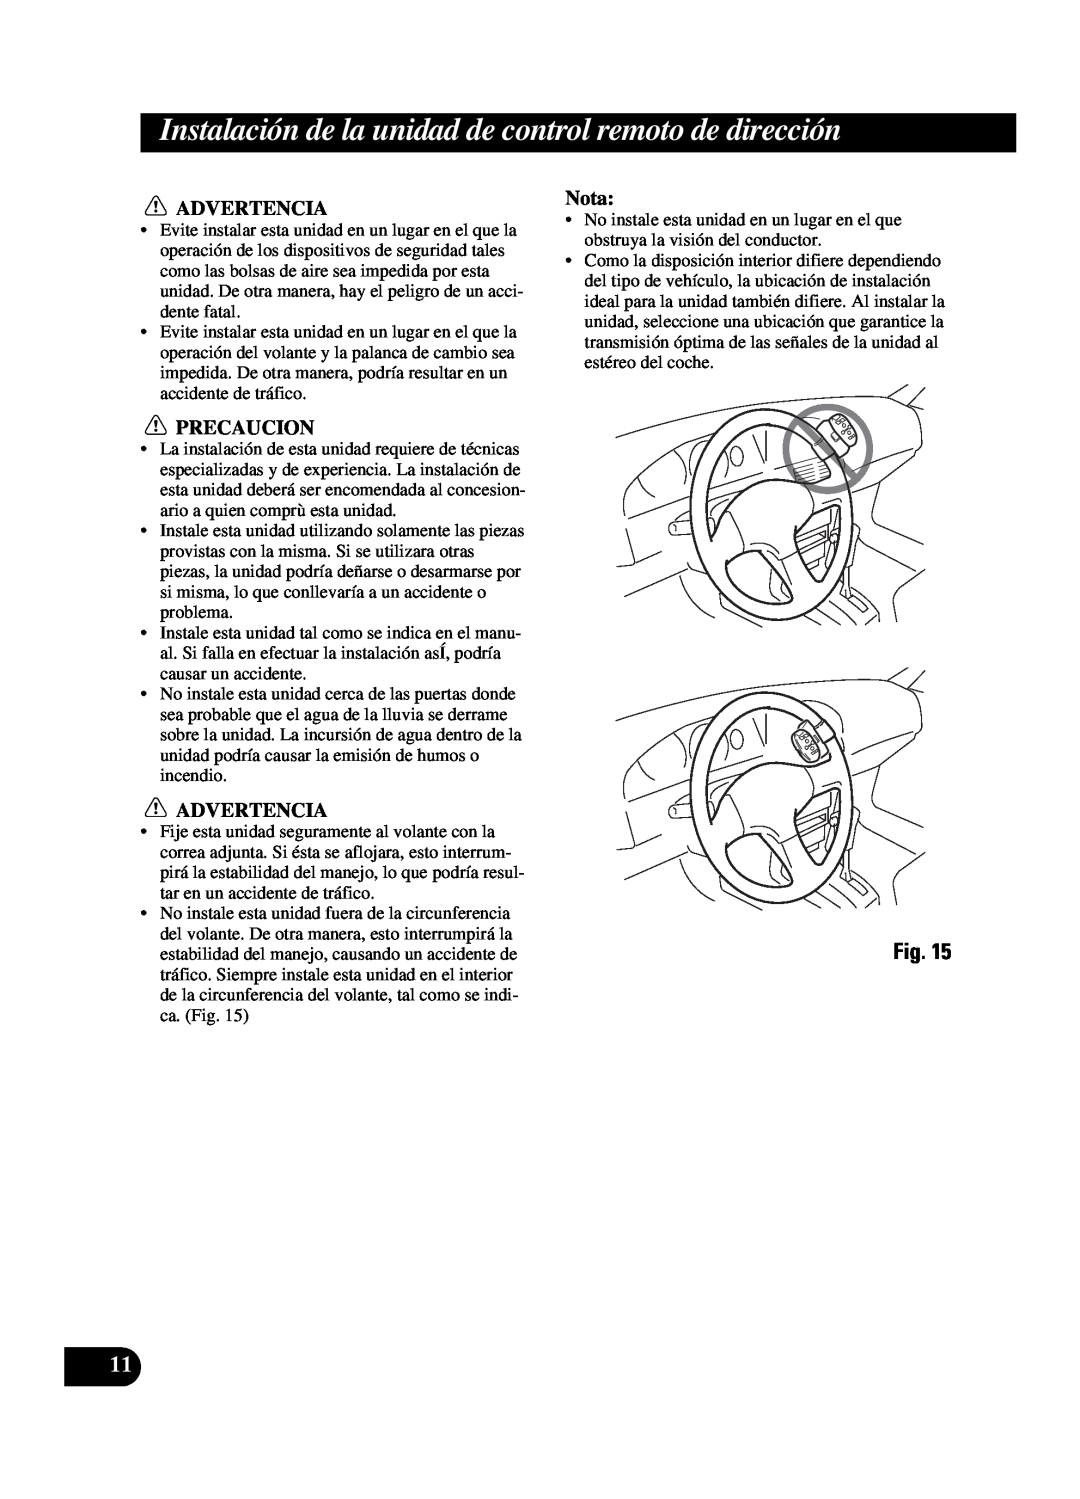 Pioneer DEH-P550MP installation manual Advertencia, Precaucion, Nota 